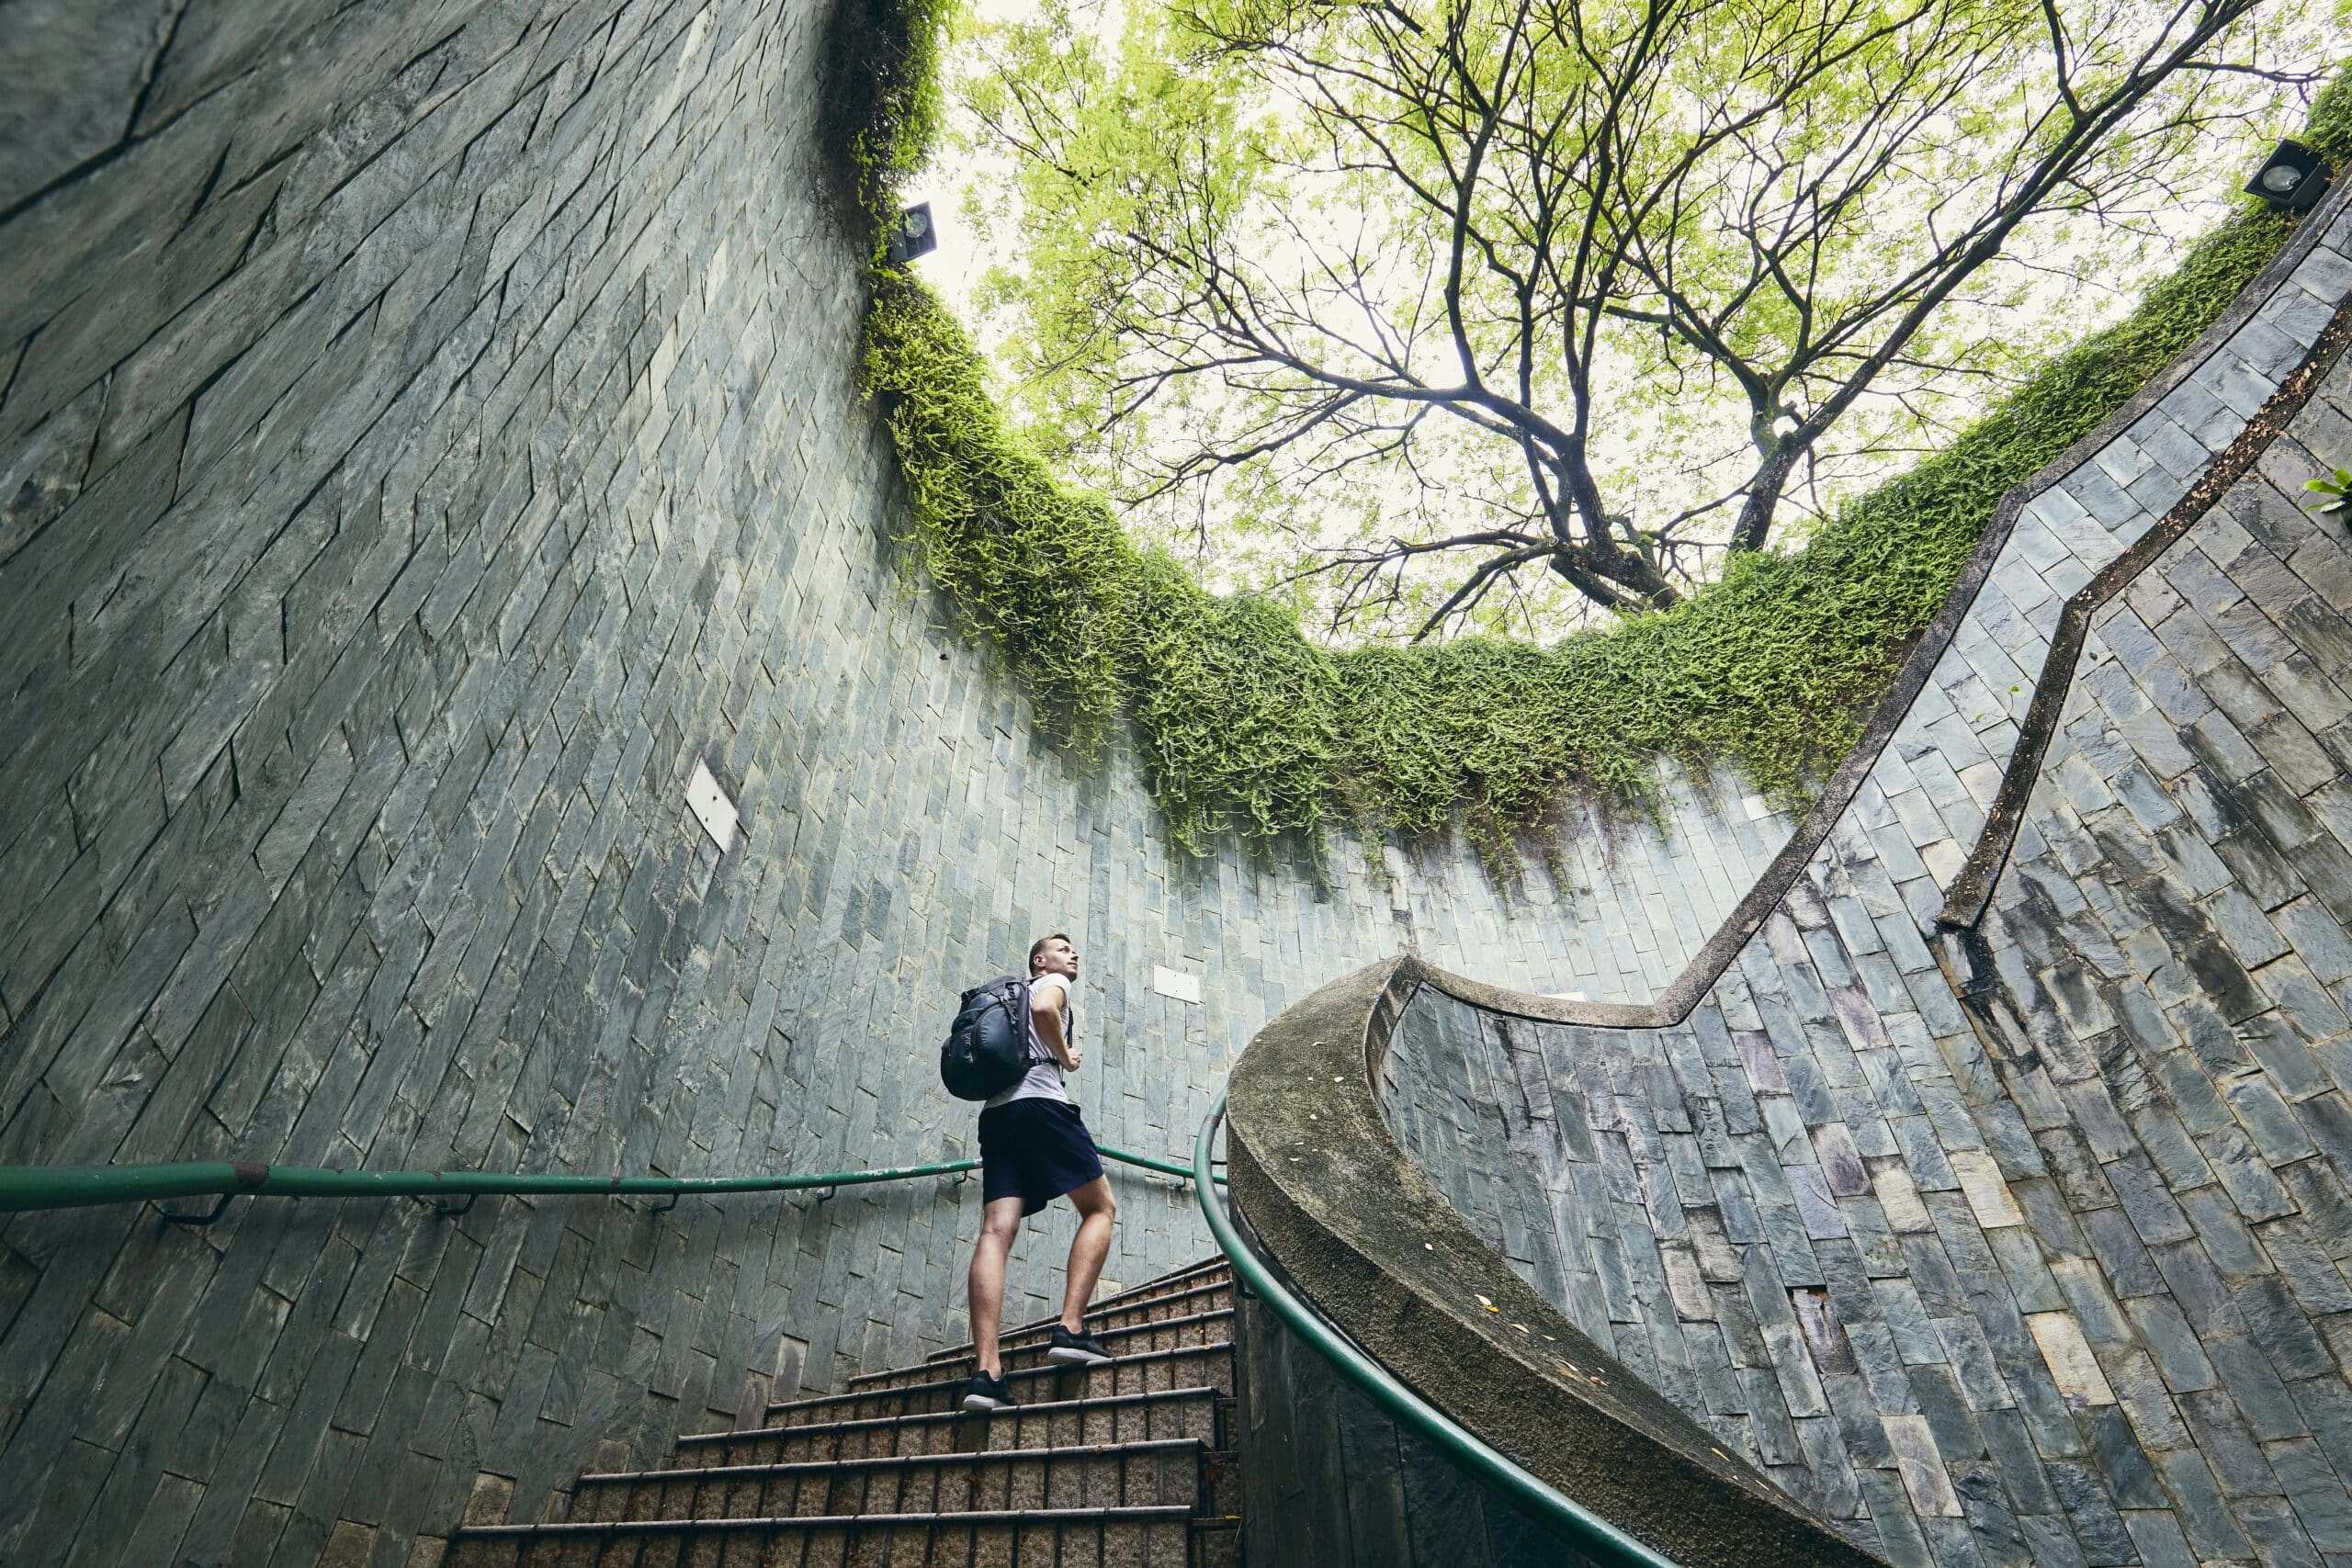 Mann går opp spiraltrapp med utsikt til tretopper